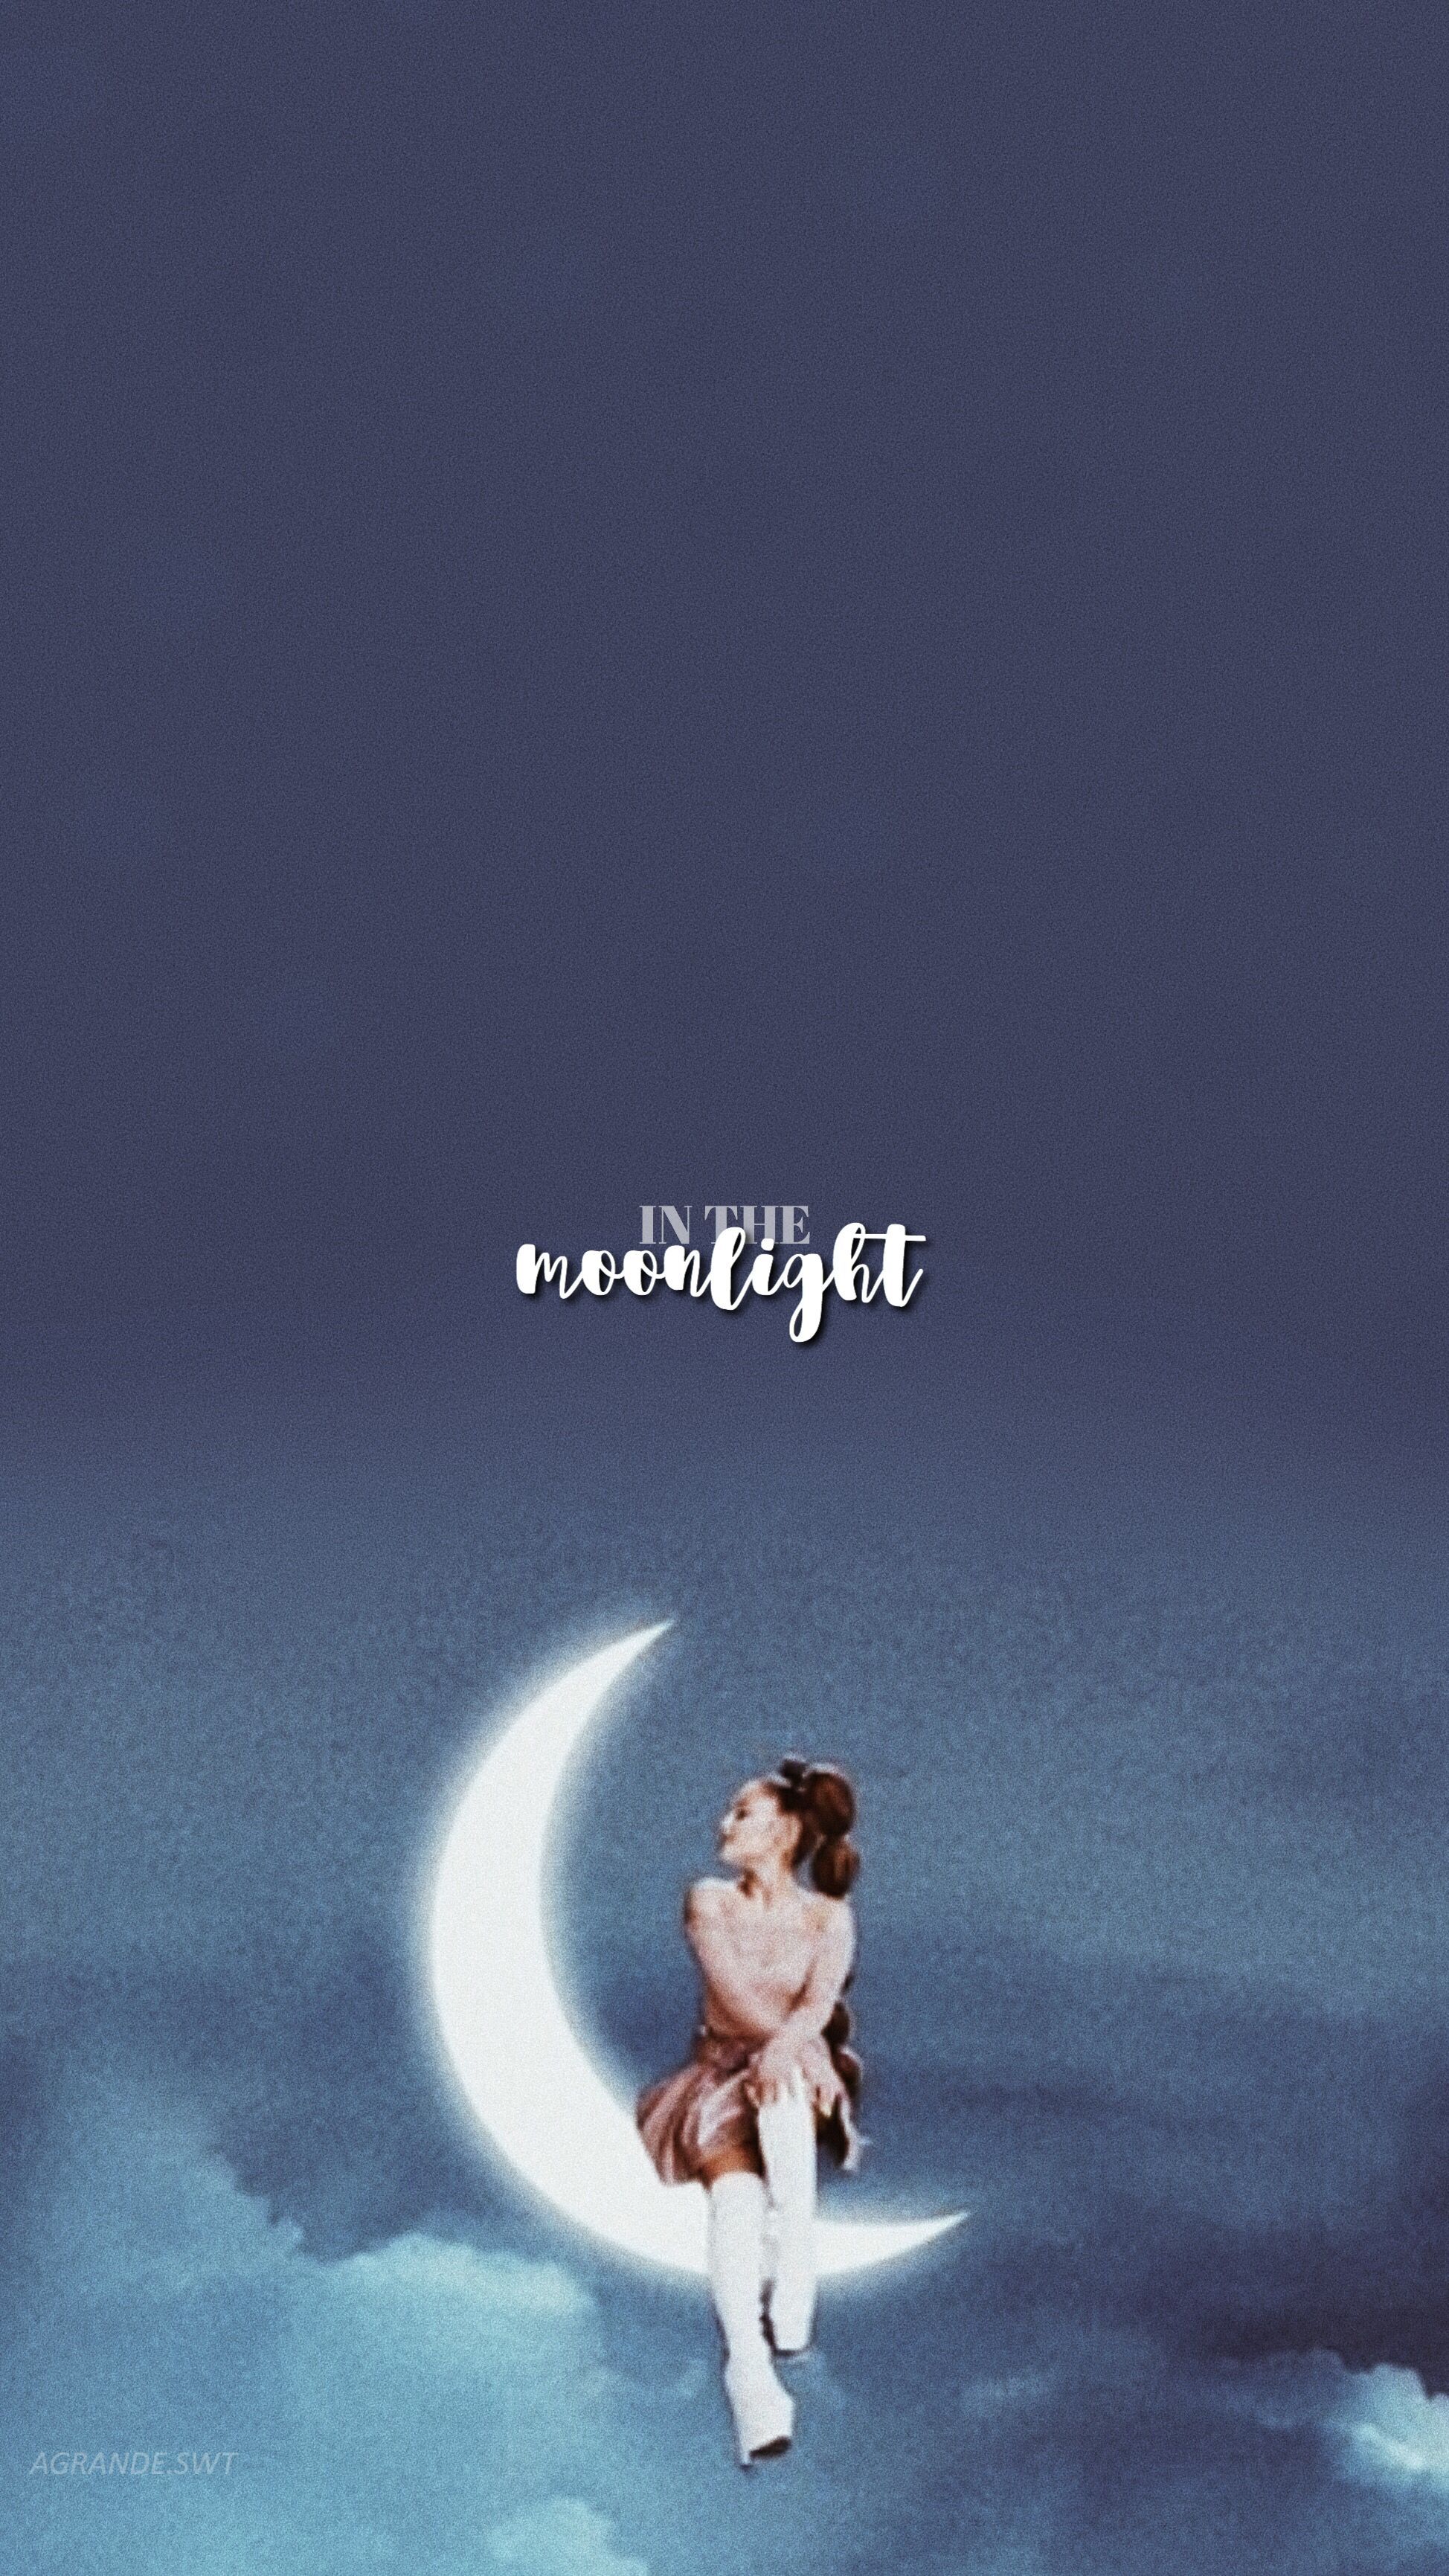 Ariana Grande Moonlight Wallpaper Free Ariana Grande Moonlight Background